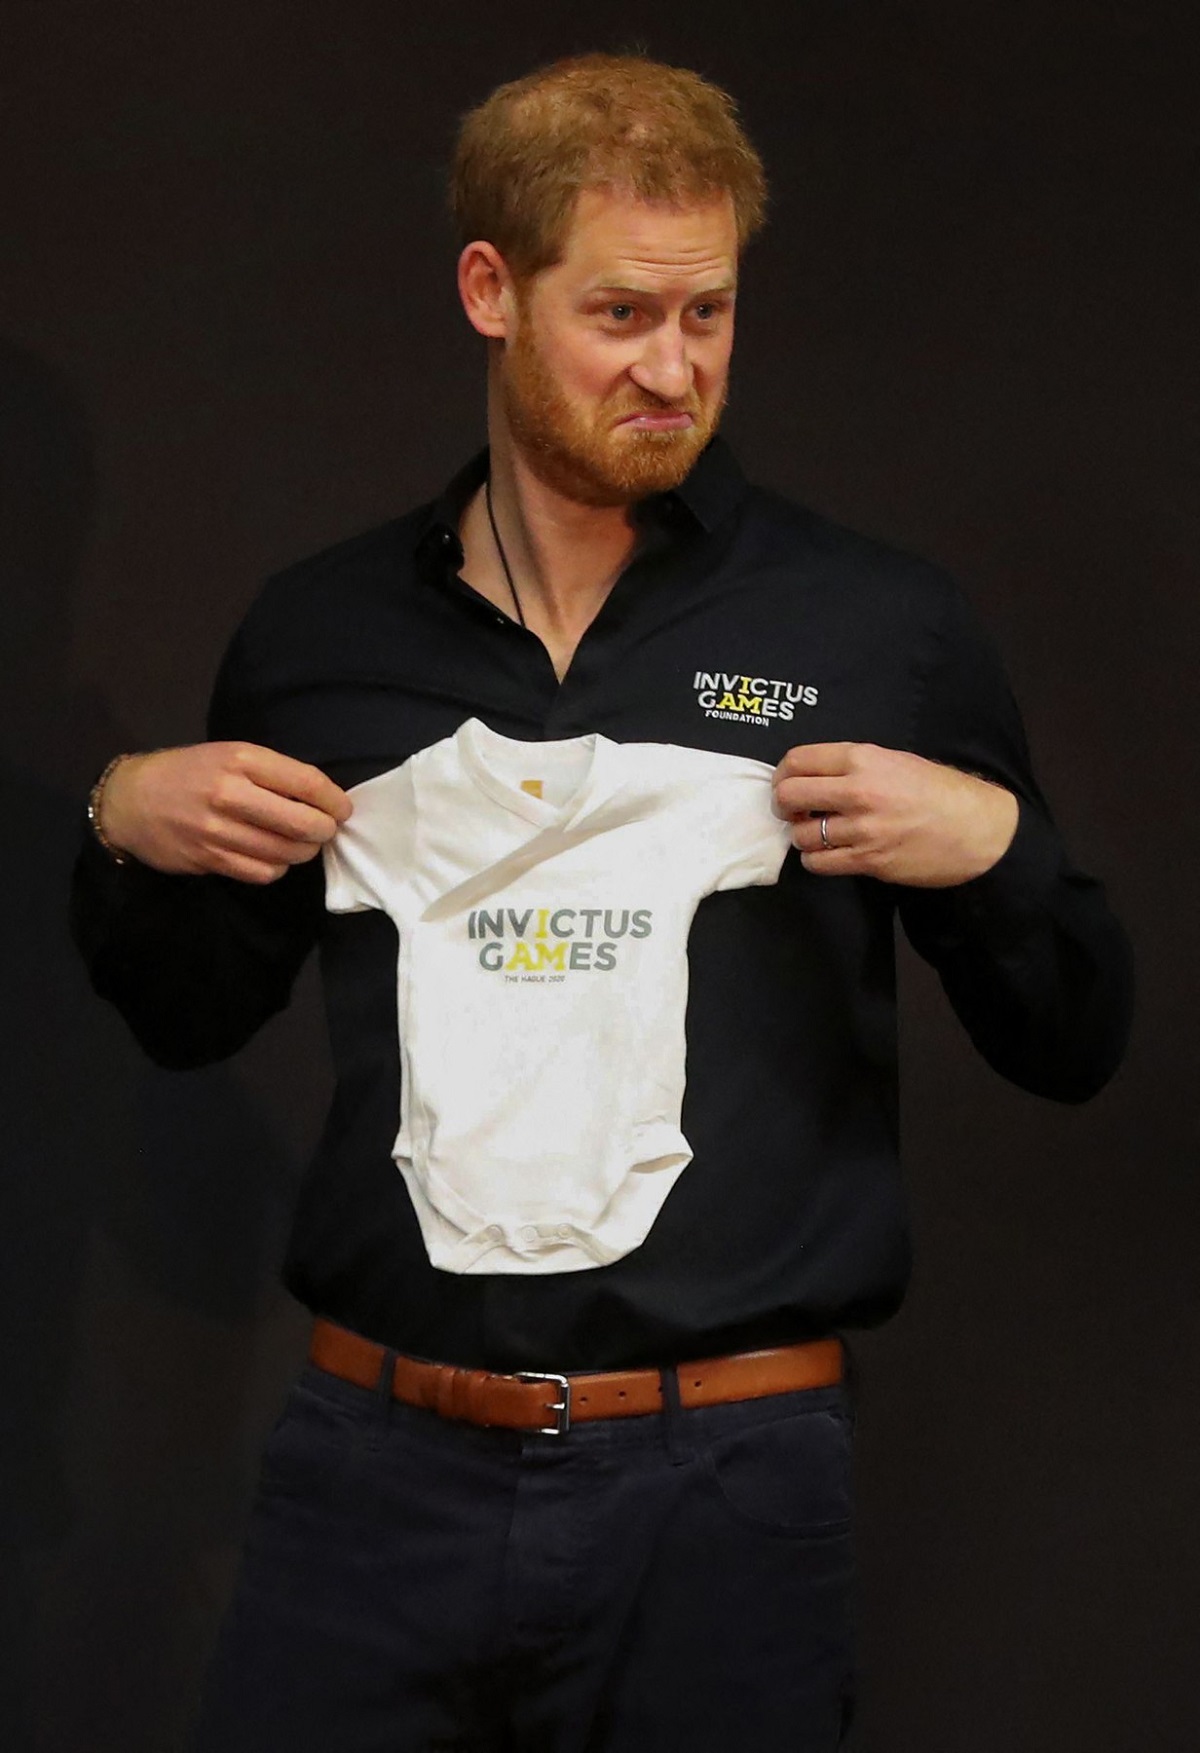 Prințul Harry ținân în mână un body de bebeluș la prezentarea Jocurilor Invictus la Haga în 2019